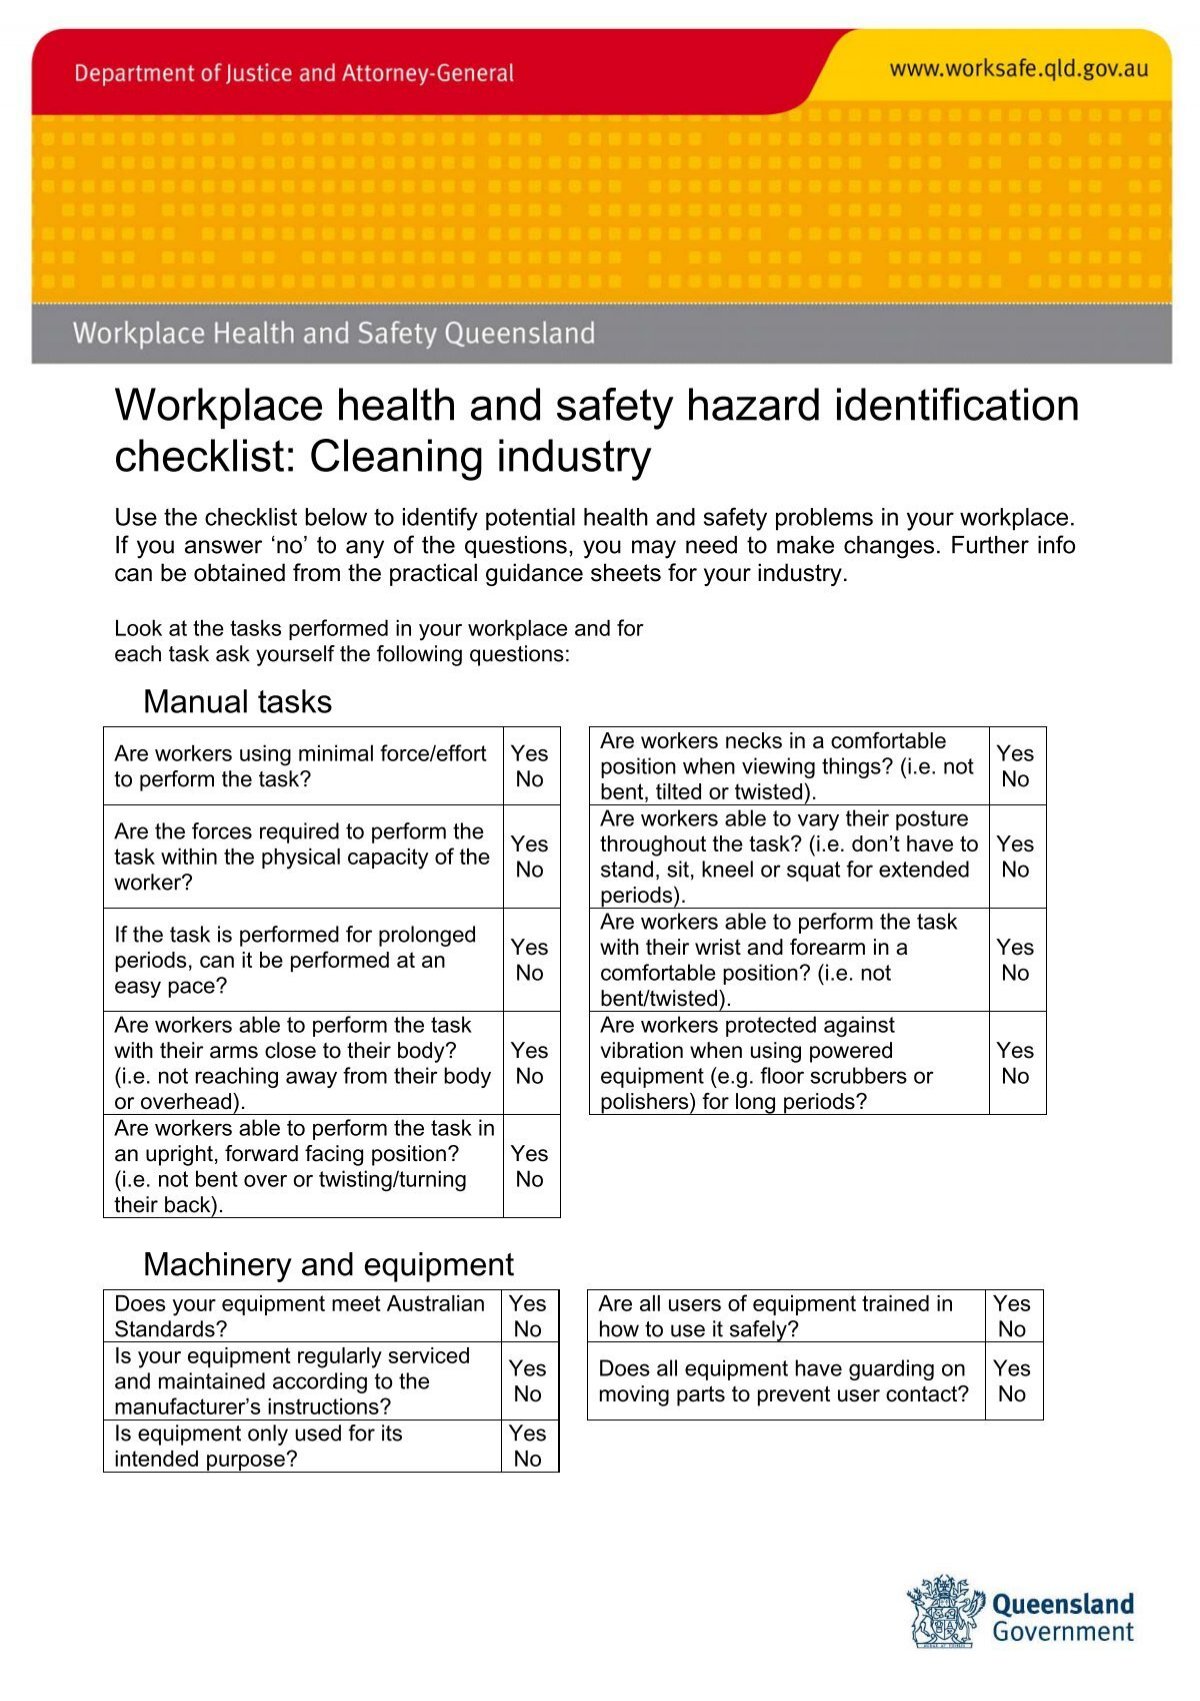 Workplace Health And Safety Hazard Identification Checklist